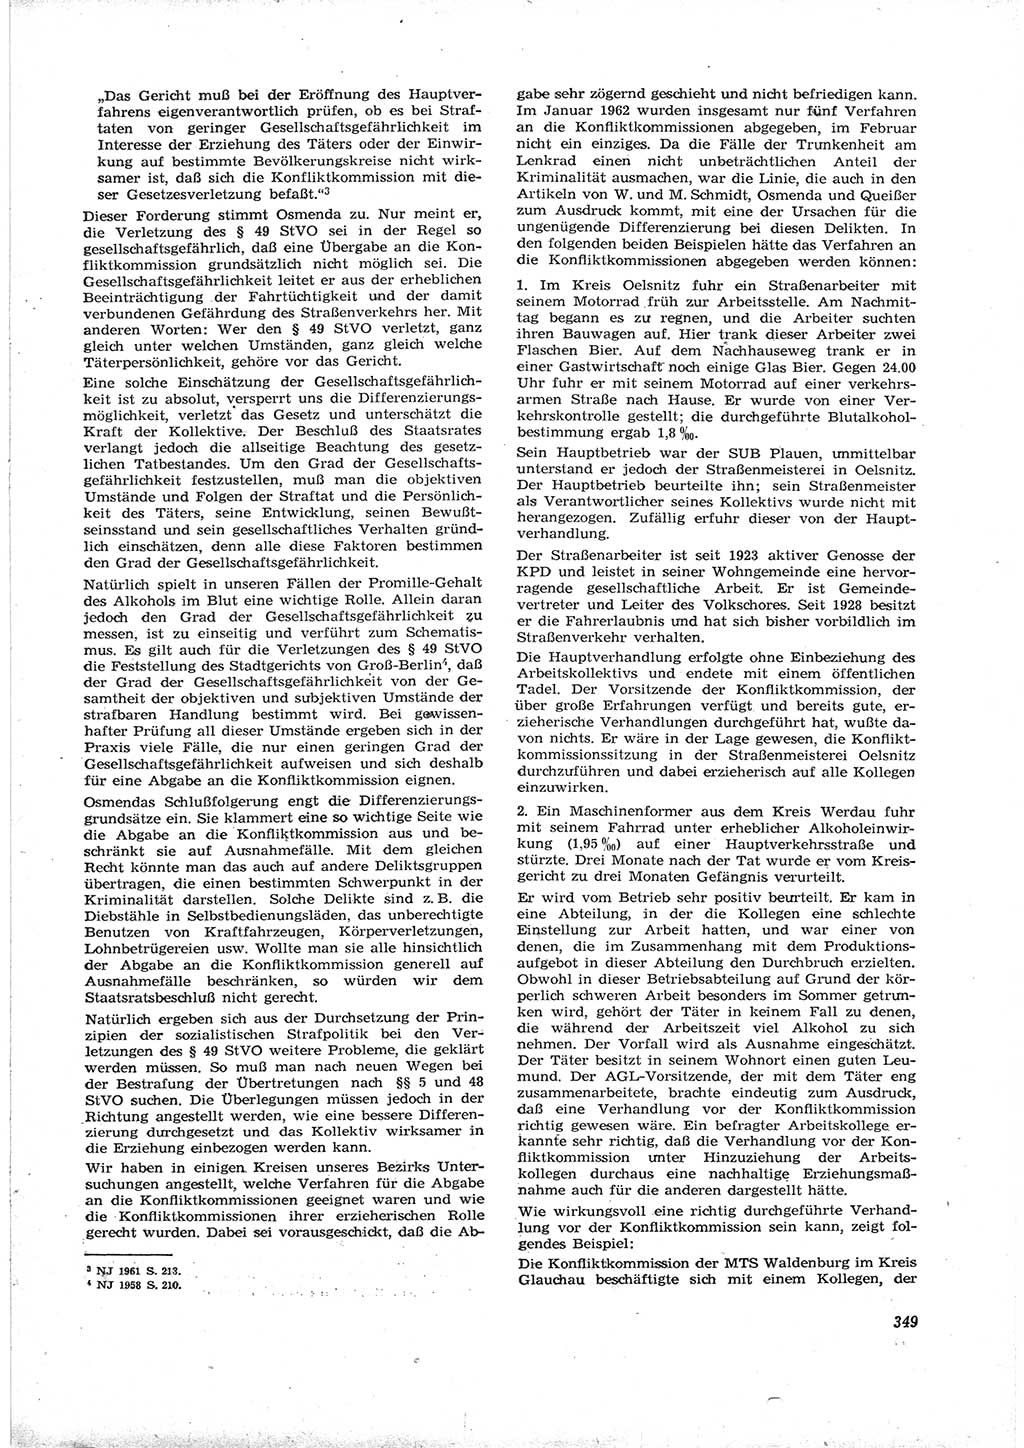 Neue Justiz (NJ), Zeitschrift für Recht und Rechtswissenschaft [Deutsche Demokratische Republik (DDR)], 16. Jahrgang 1962, Seite 349 (NJ DDR 1962, S. 349)